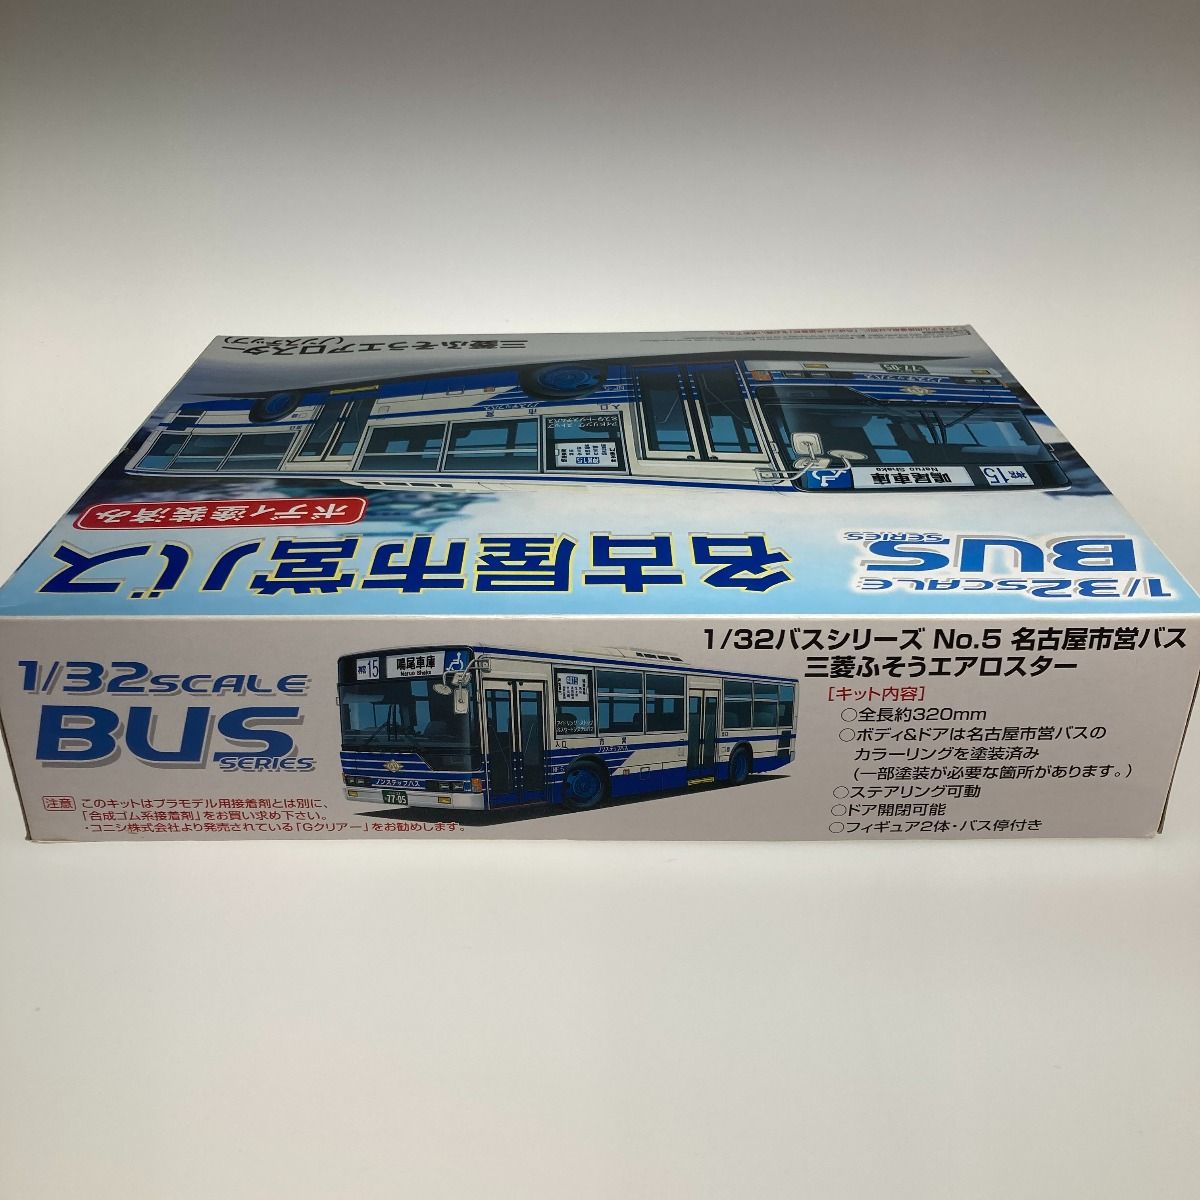 ○○ アオシマ プラモデル 1/32 バスシリーズ 名古屋市営バス 三菱